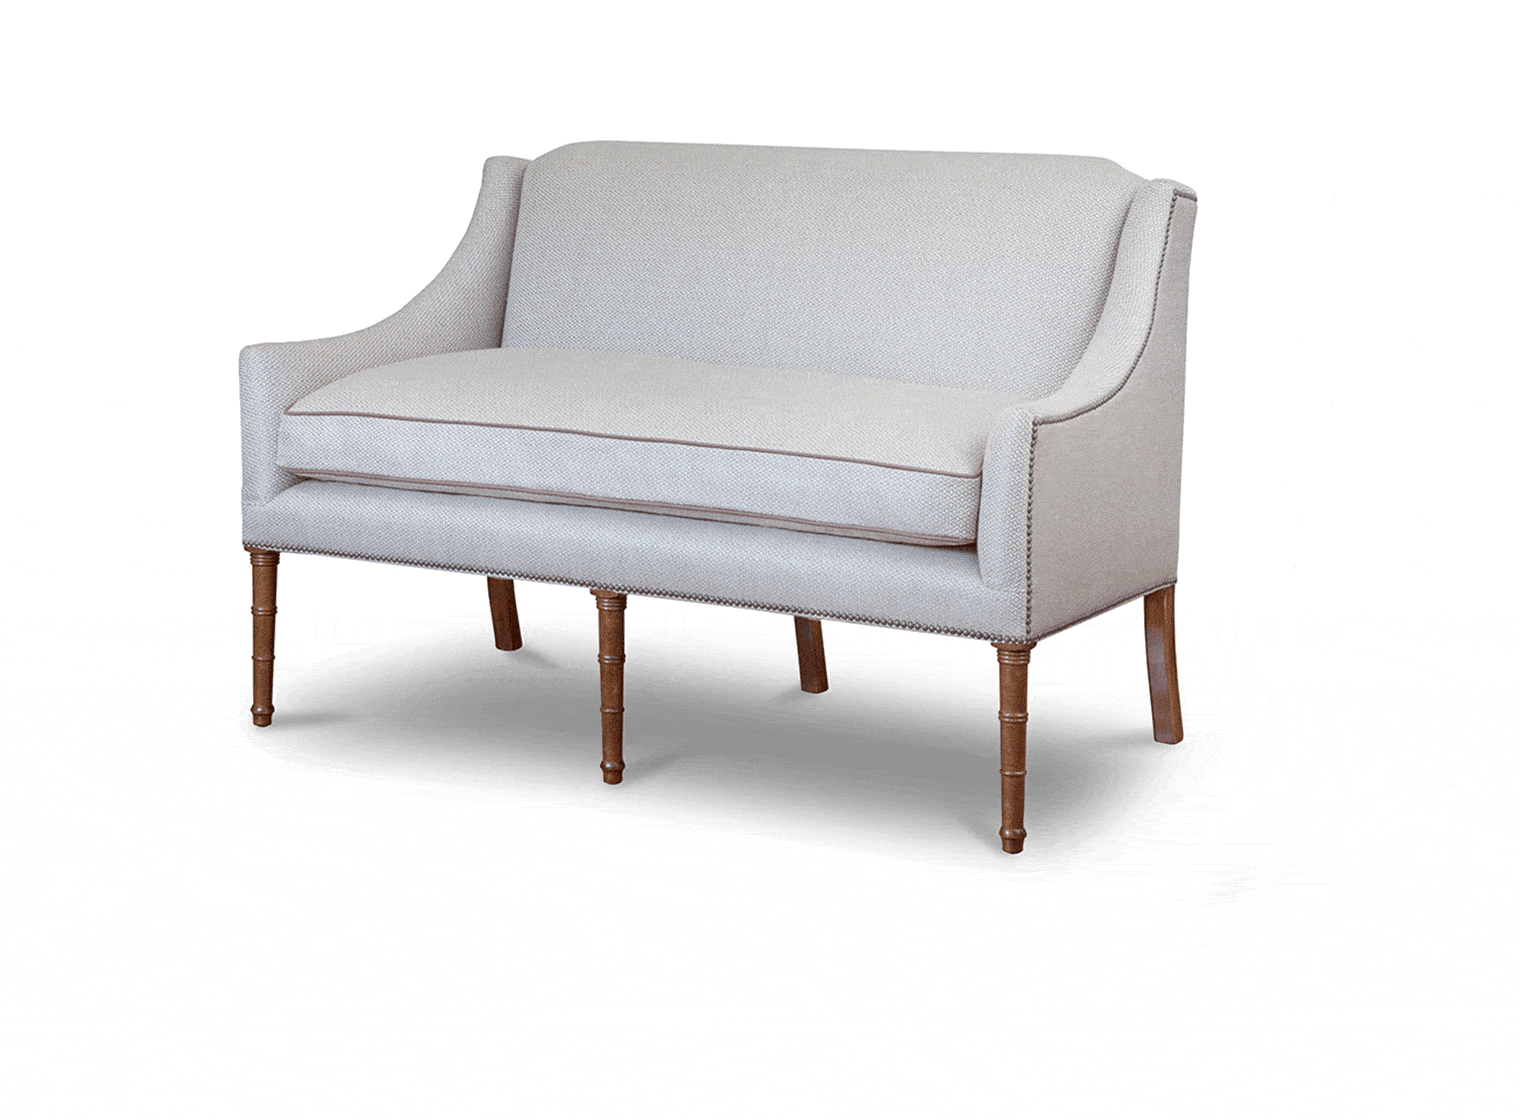 Alexandra 2 seater sofa in Piedmont linen - Biscuit - Beaumont & Fletcher